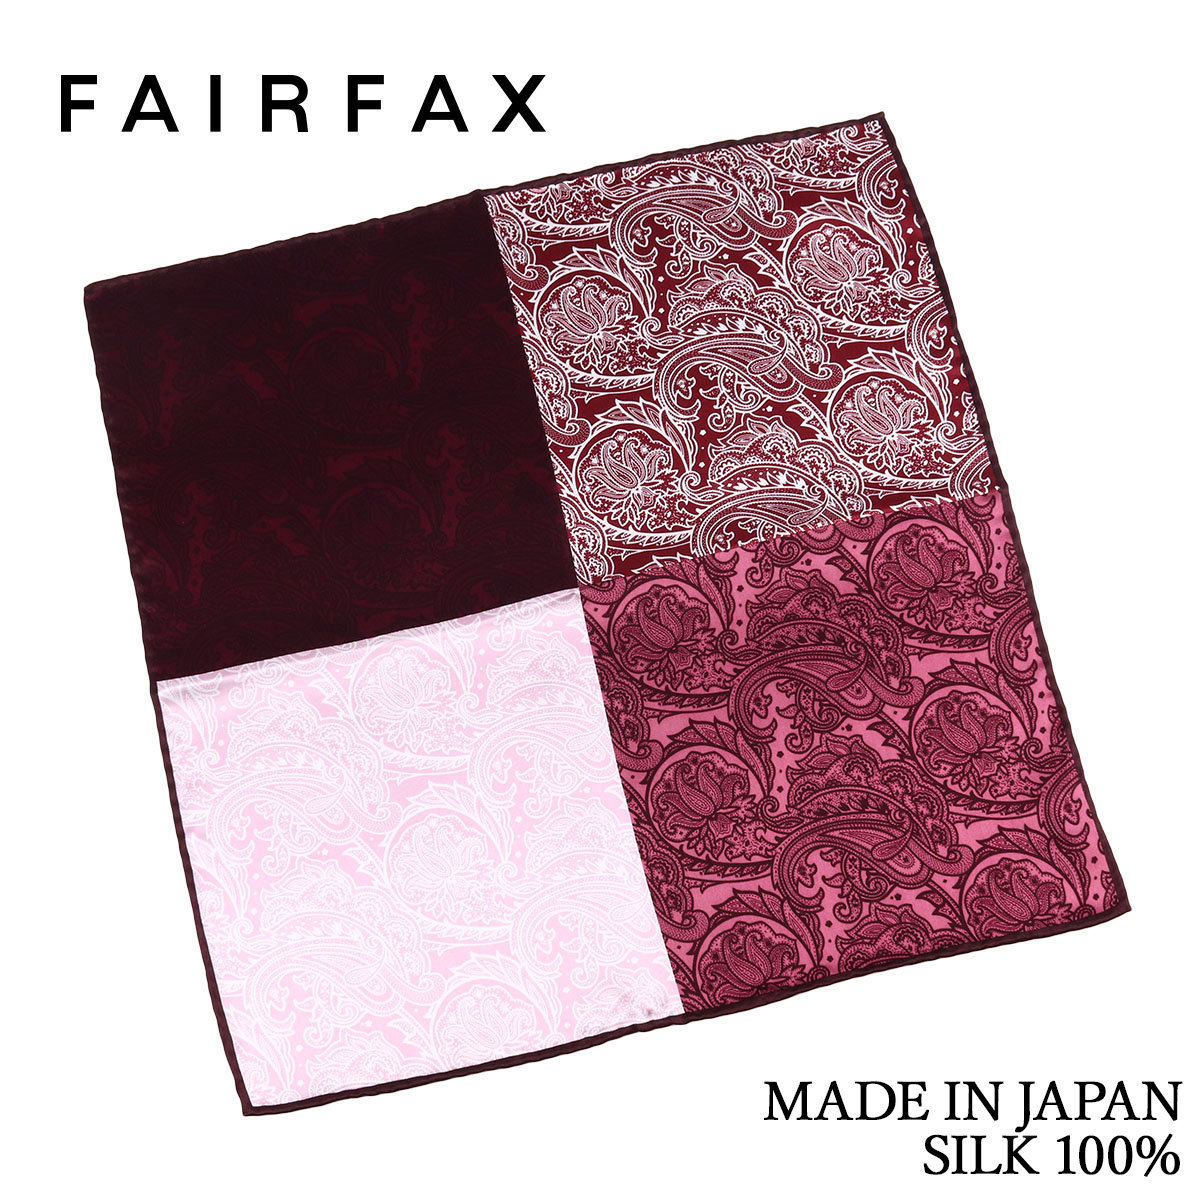 (フェアファクス) FAIRFAX ポケットチーフ シルク 4面 ペイズリー プリント ワイン 赤 ピンク 日本製 手縫い シルク100% メンズ ハンドロール|結婚式 ブランド ビジネス おしゃれ プレゼント カジュアル 男性 ギフト 高級 ハレの日 ハンカチ チーフ